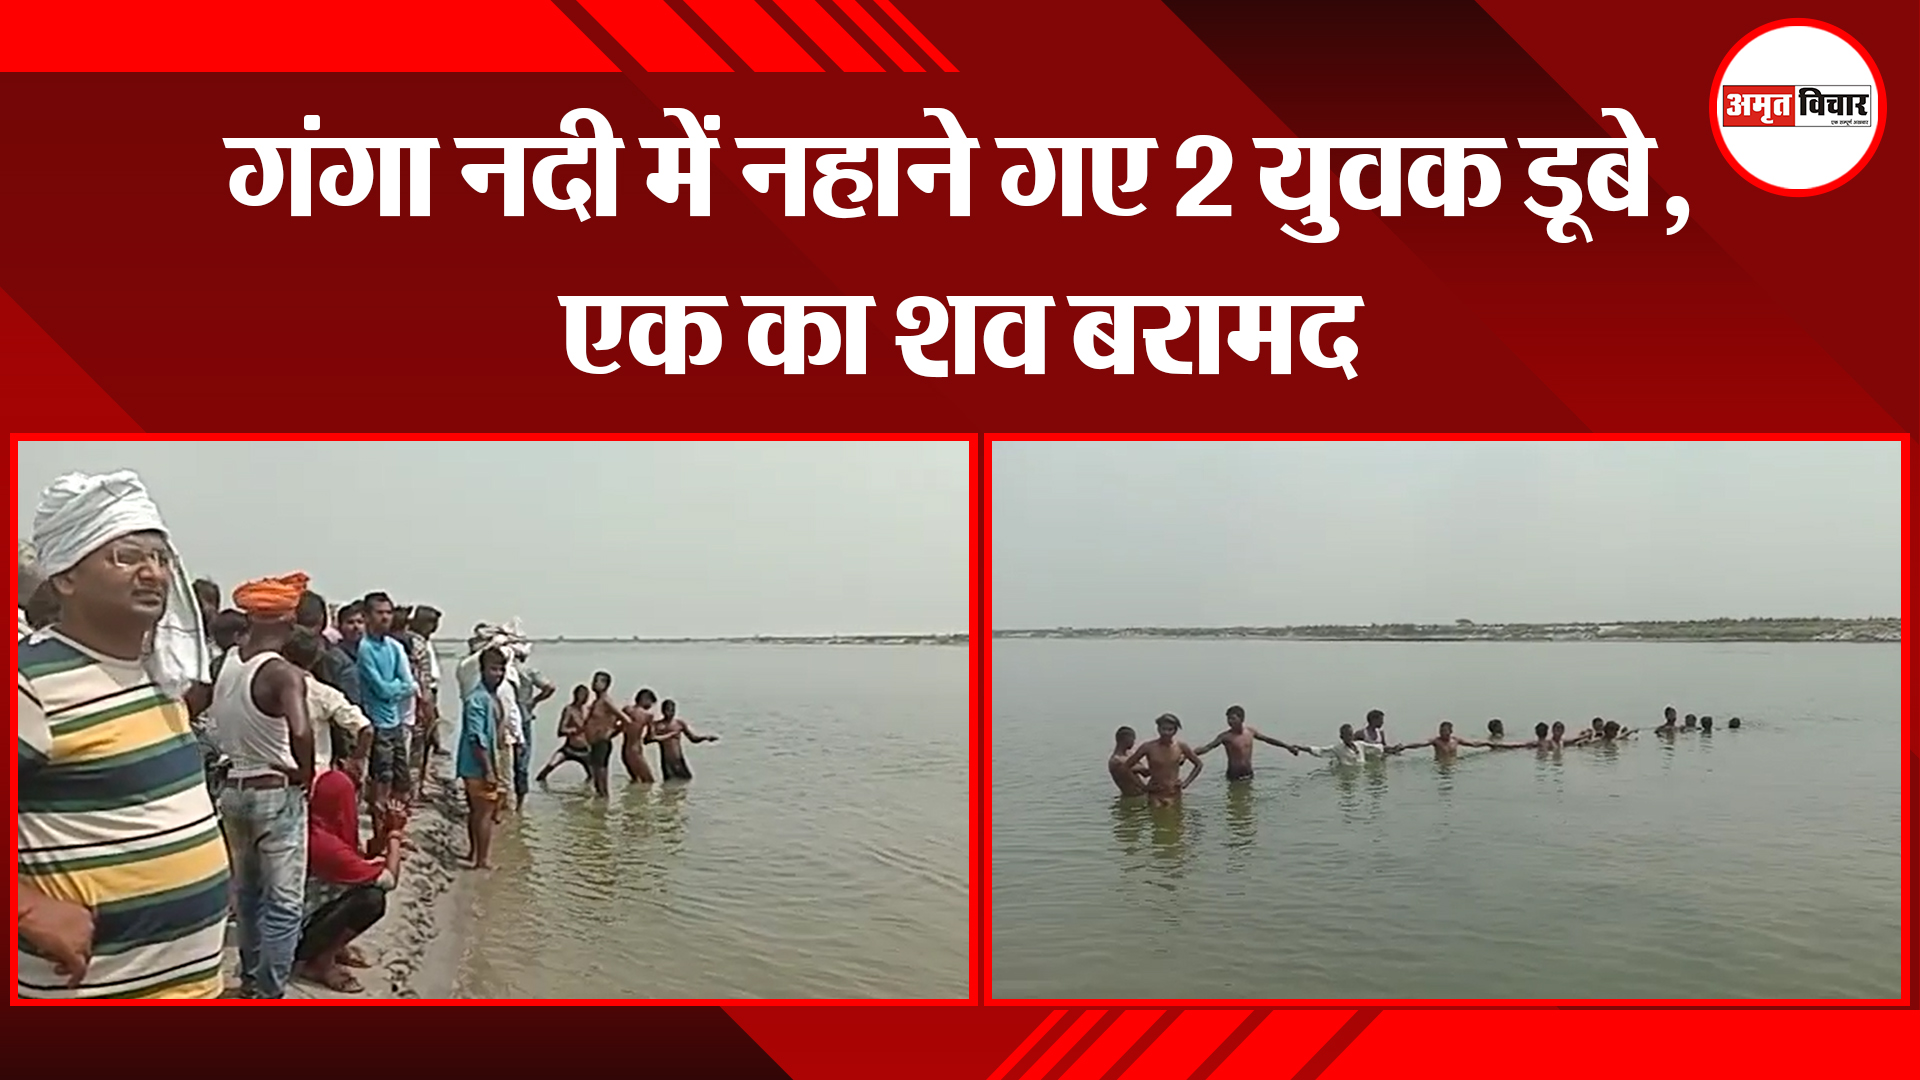 उन्नाव: गंगा नदी में नहाने गए 2 युवक डूबे, एक का शव बरामद